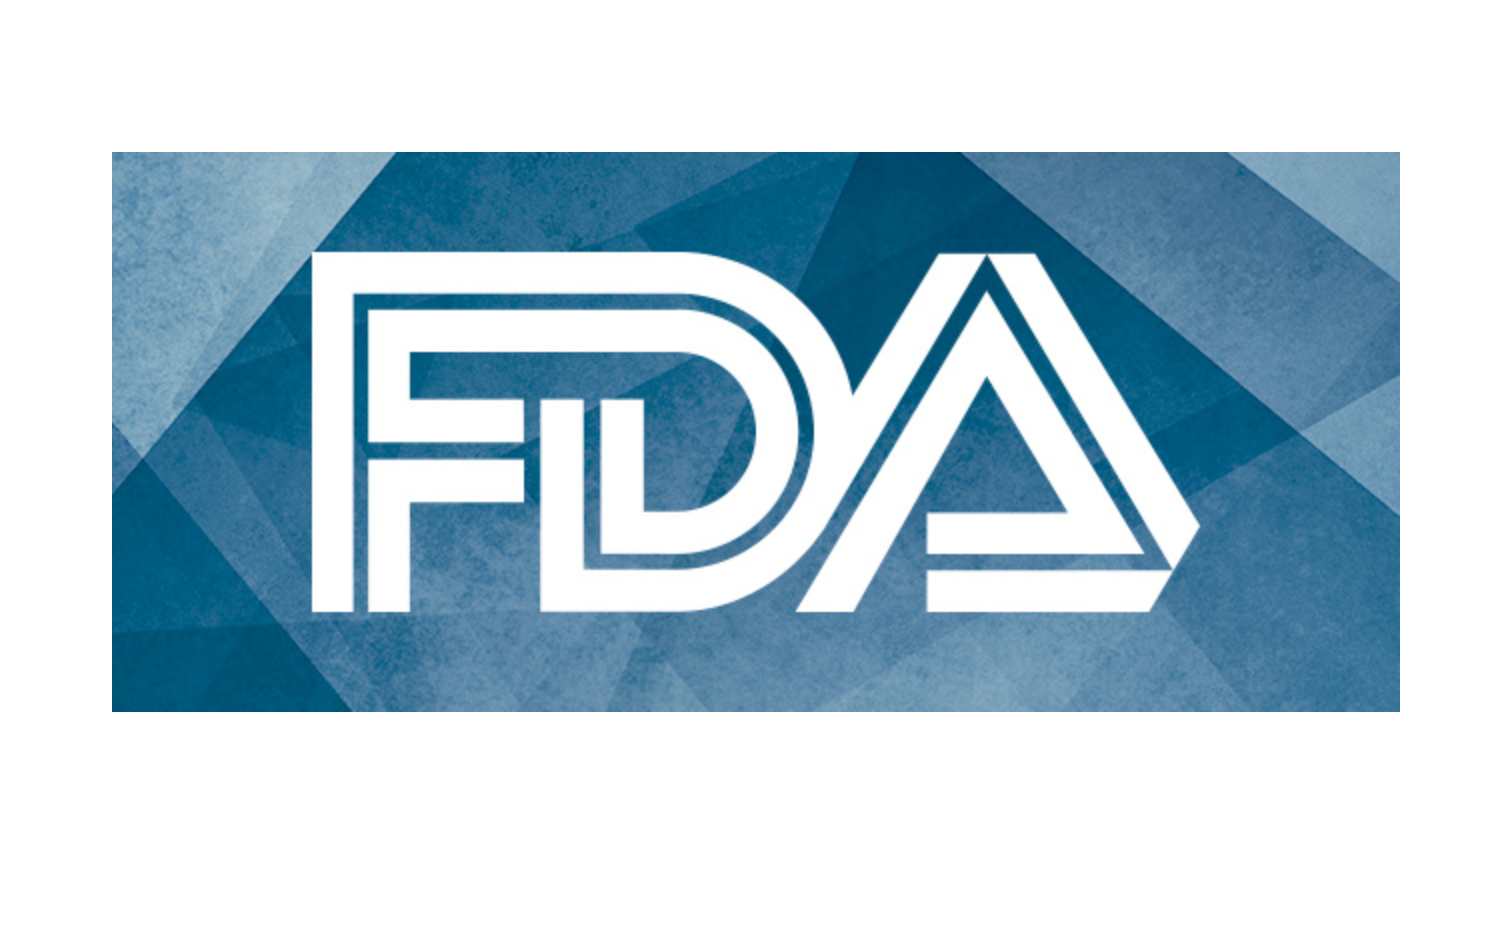 FDA Awards Breakthrough Device Designation to Roche's Neurofilament Light Chain Test for MS